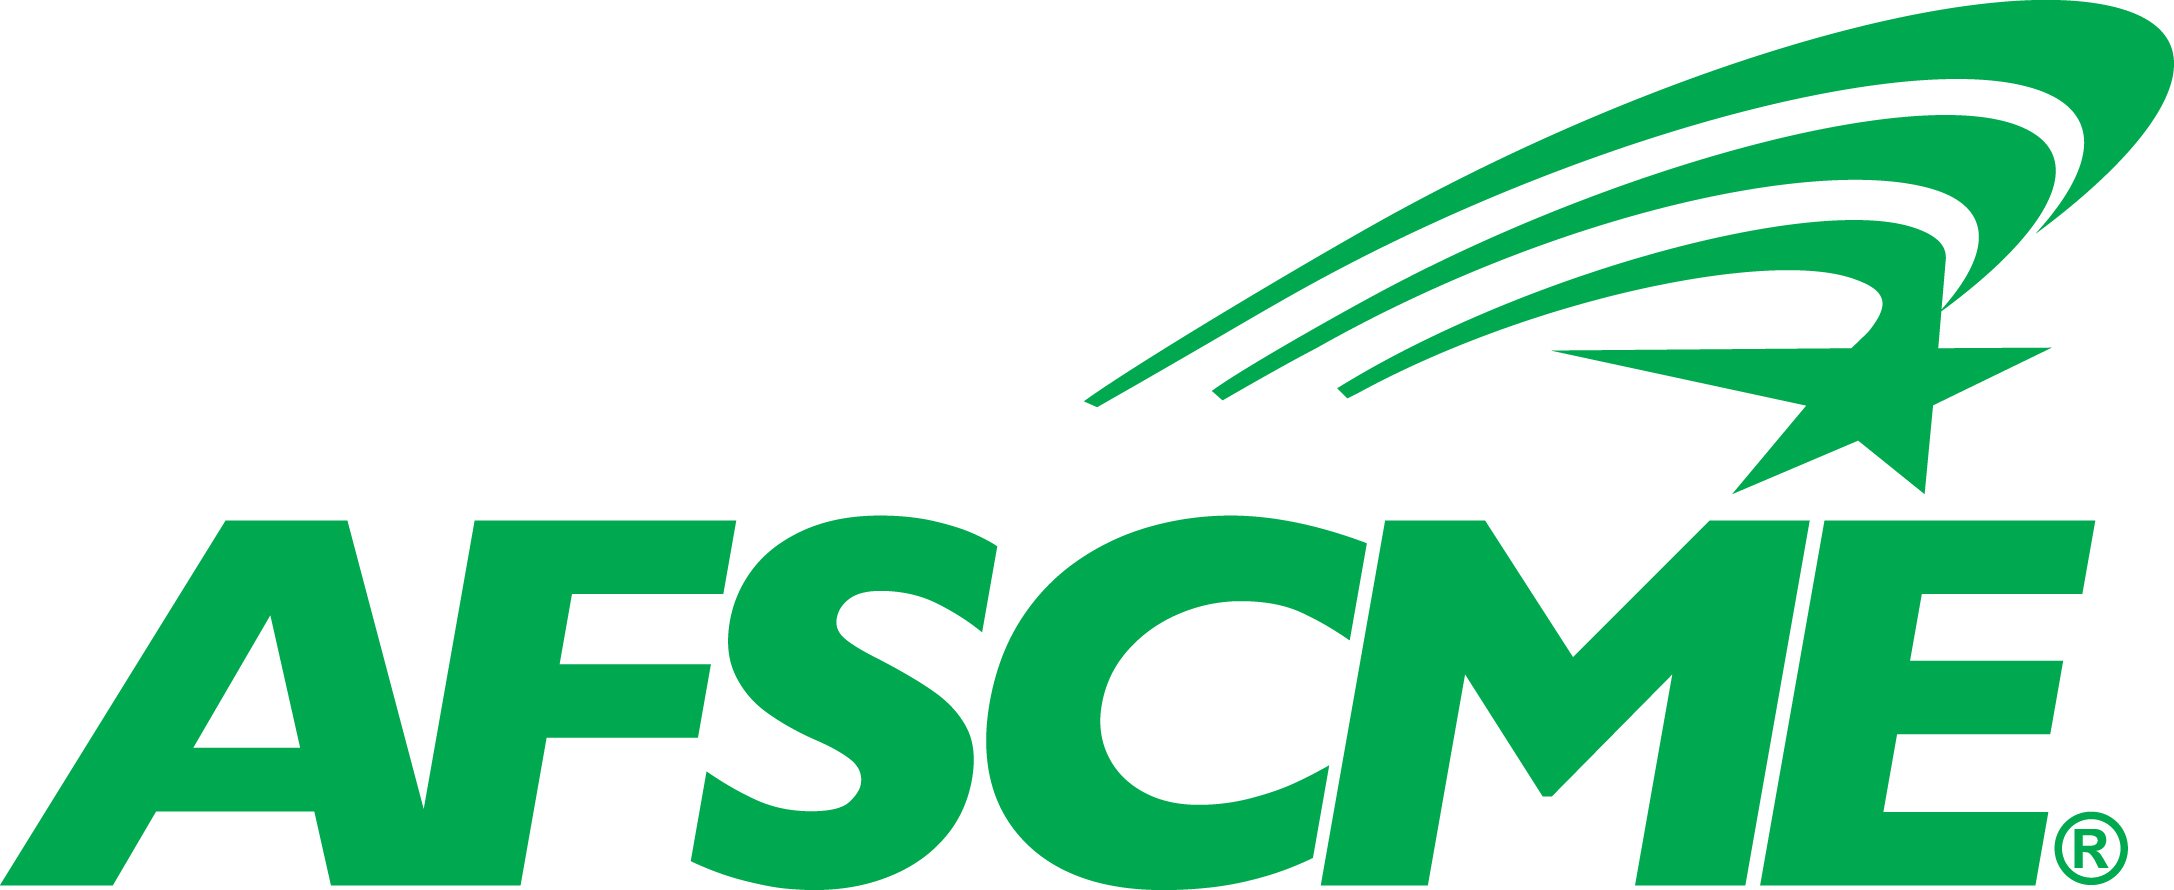 AFSCME Logo